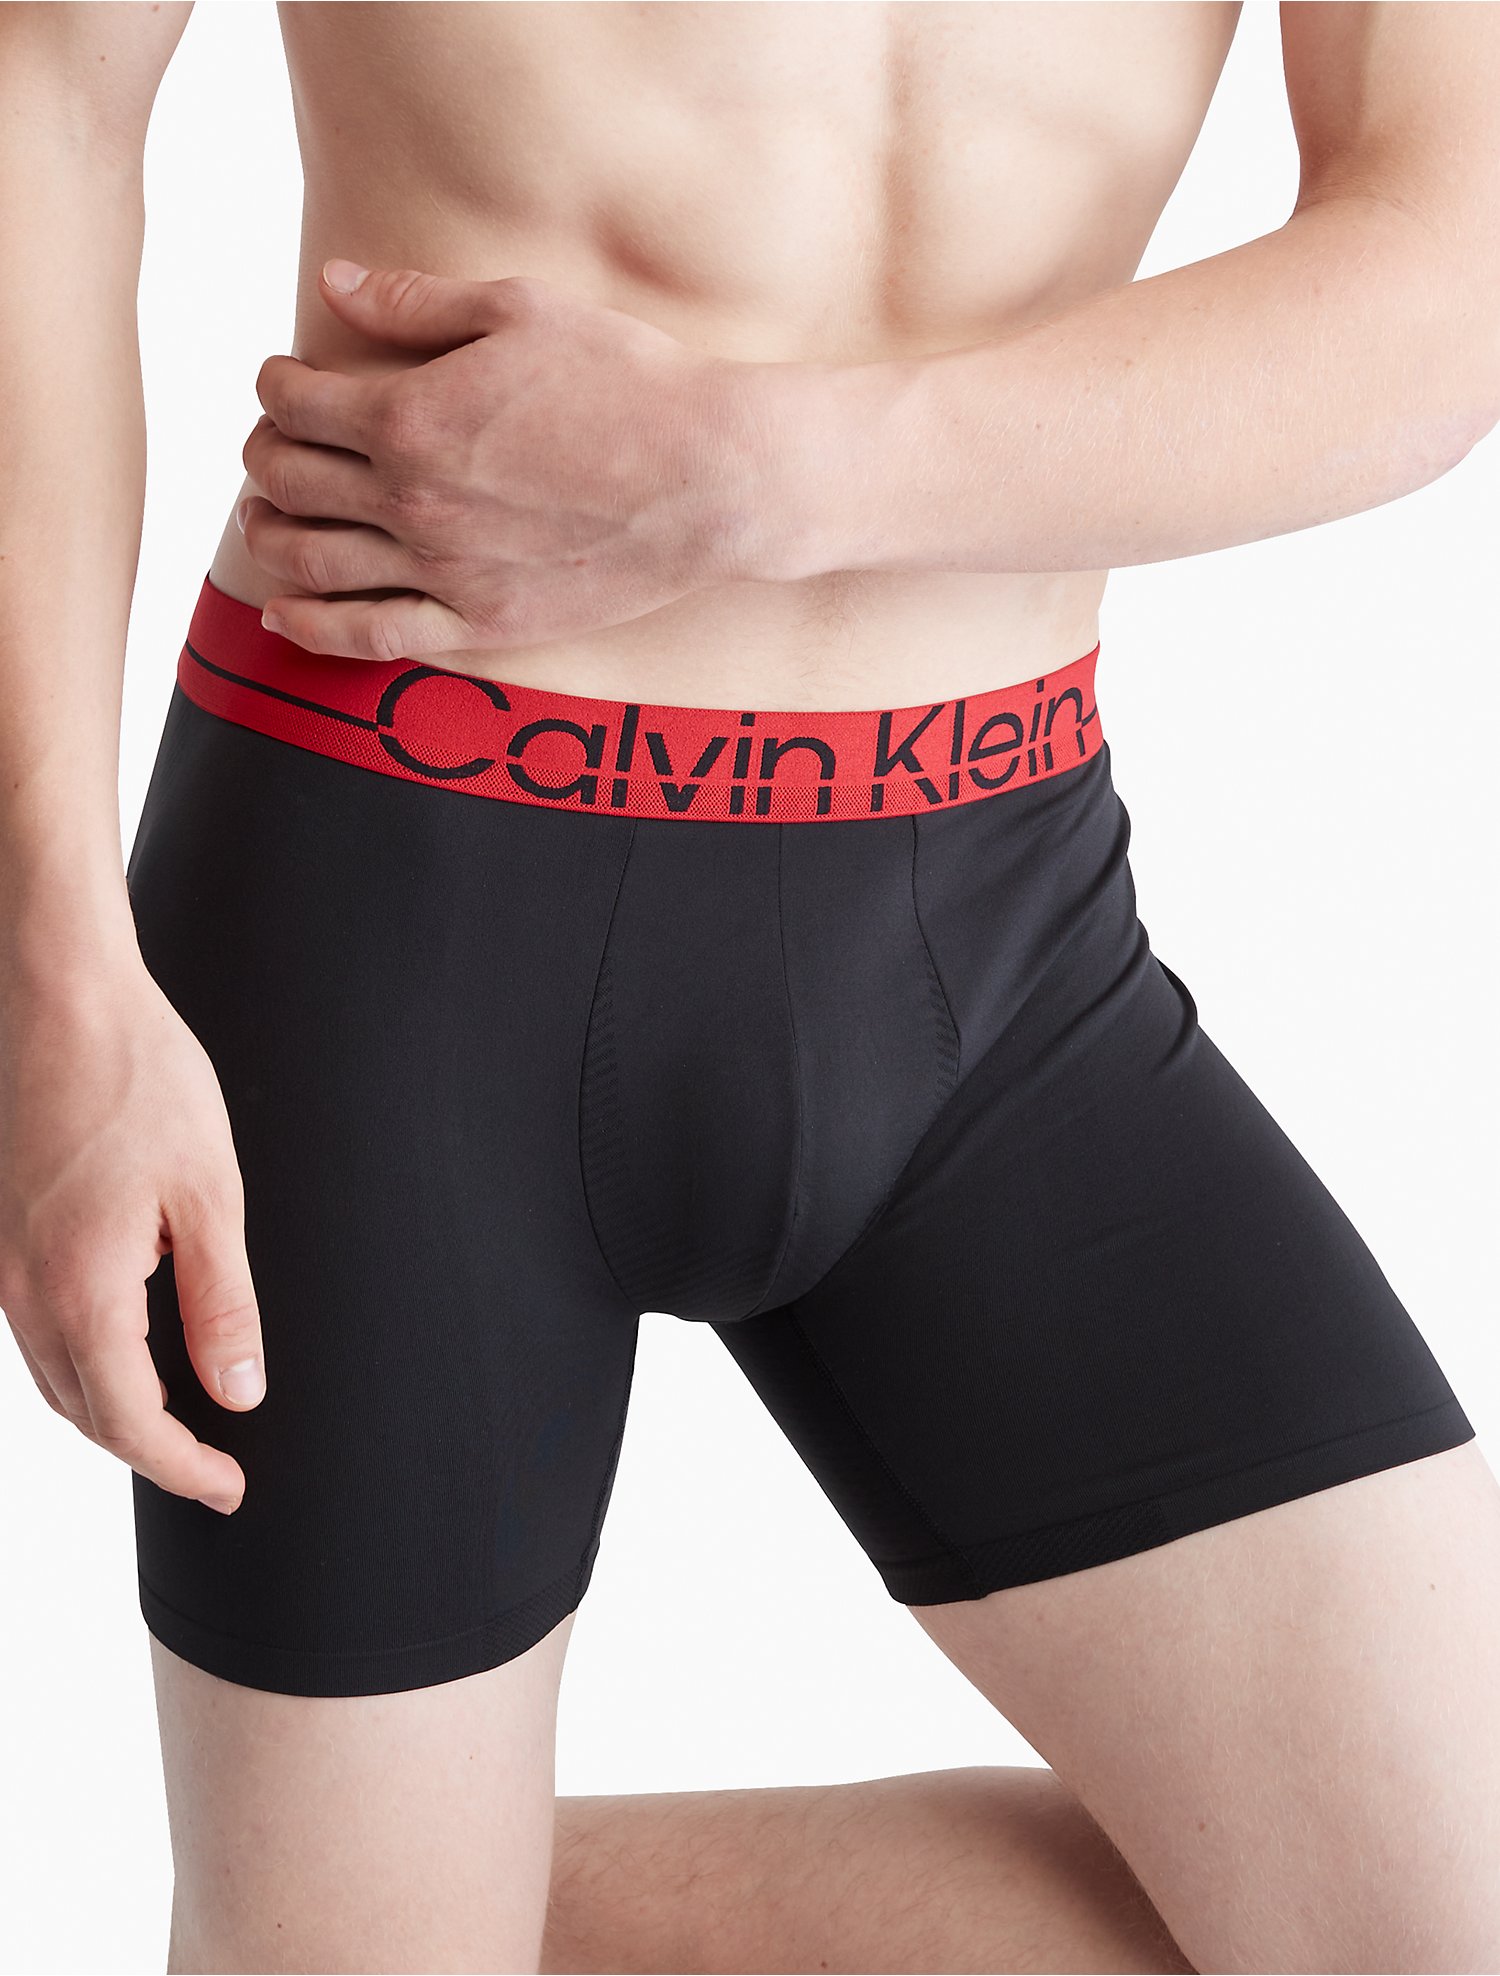 Gelukkig is dat helper agenda Calvin Klein Pro Fit Boxer Brief | Calvin Klein® USA